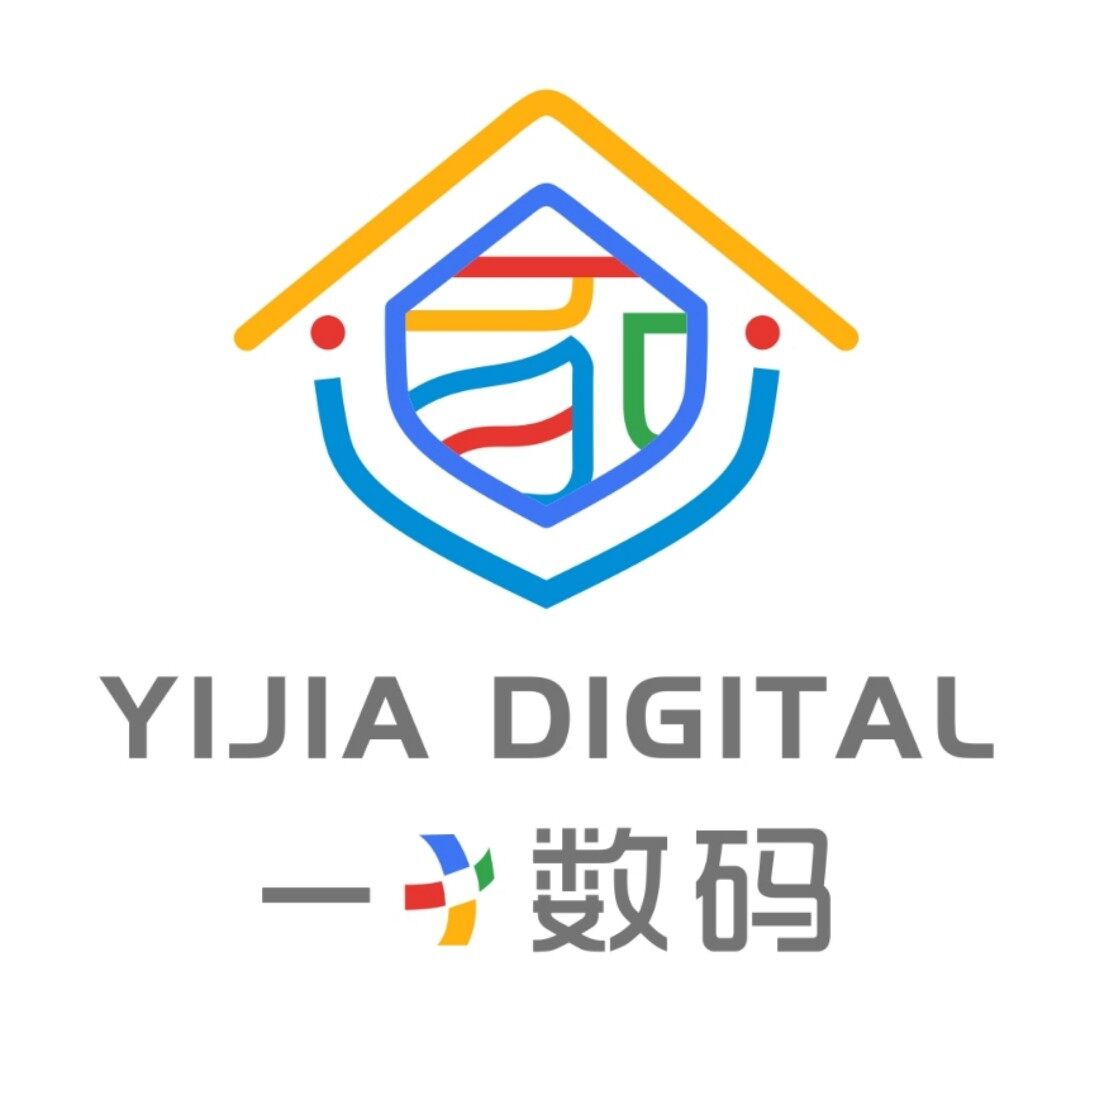 郑州航空港区滨河一家数码手机通讯店logo